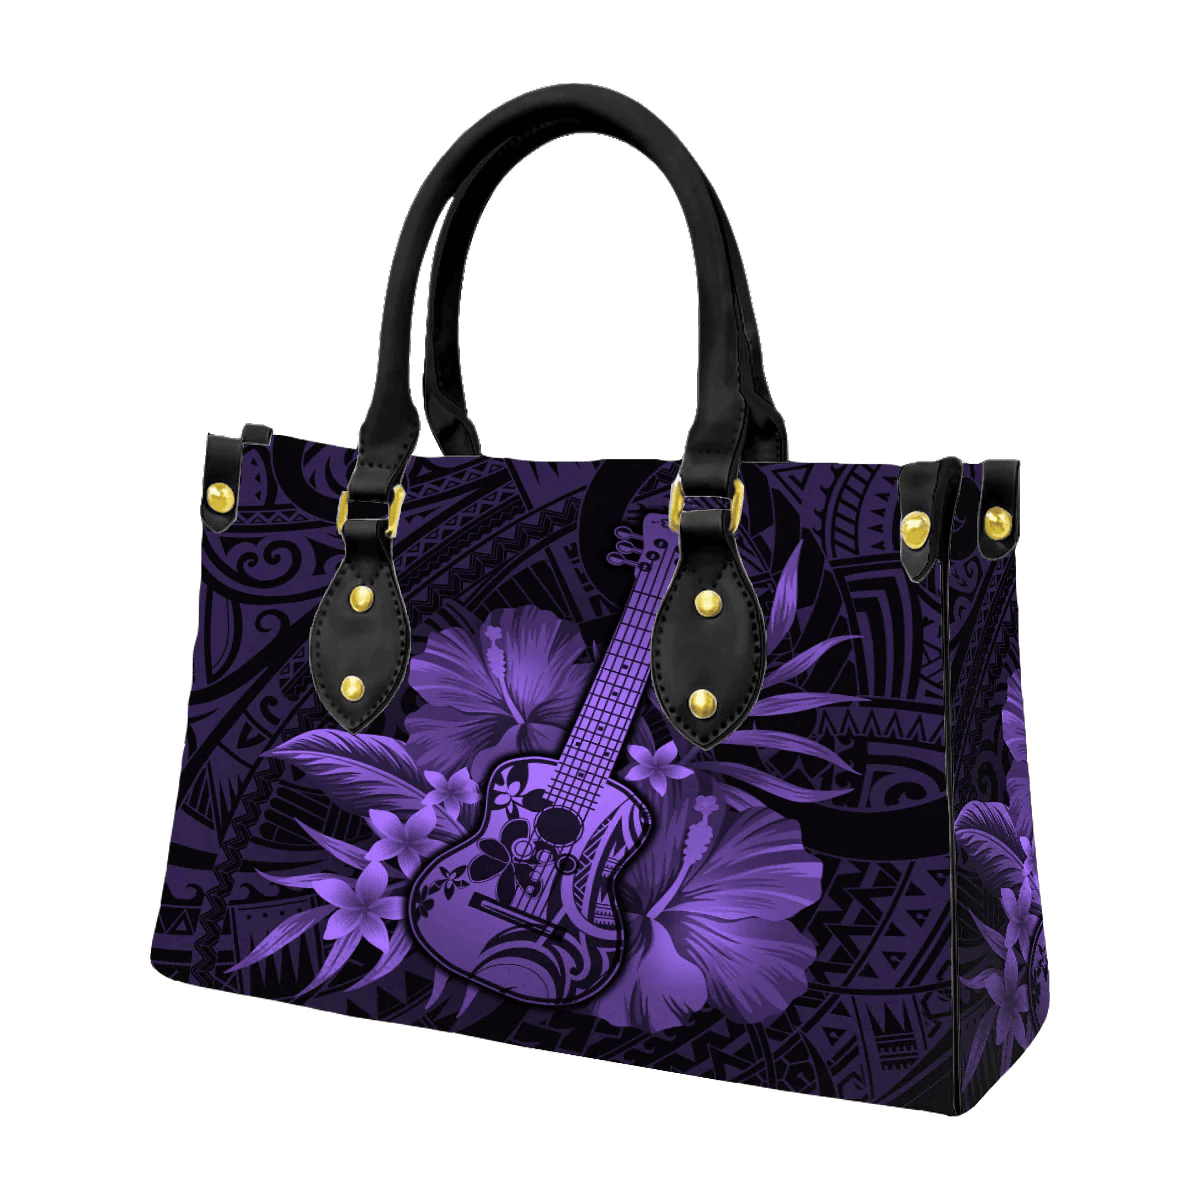 Alohawaii Square Tote Bag - Hawaii Ukulele Flower Flag Purple A31